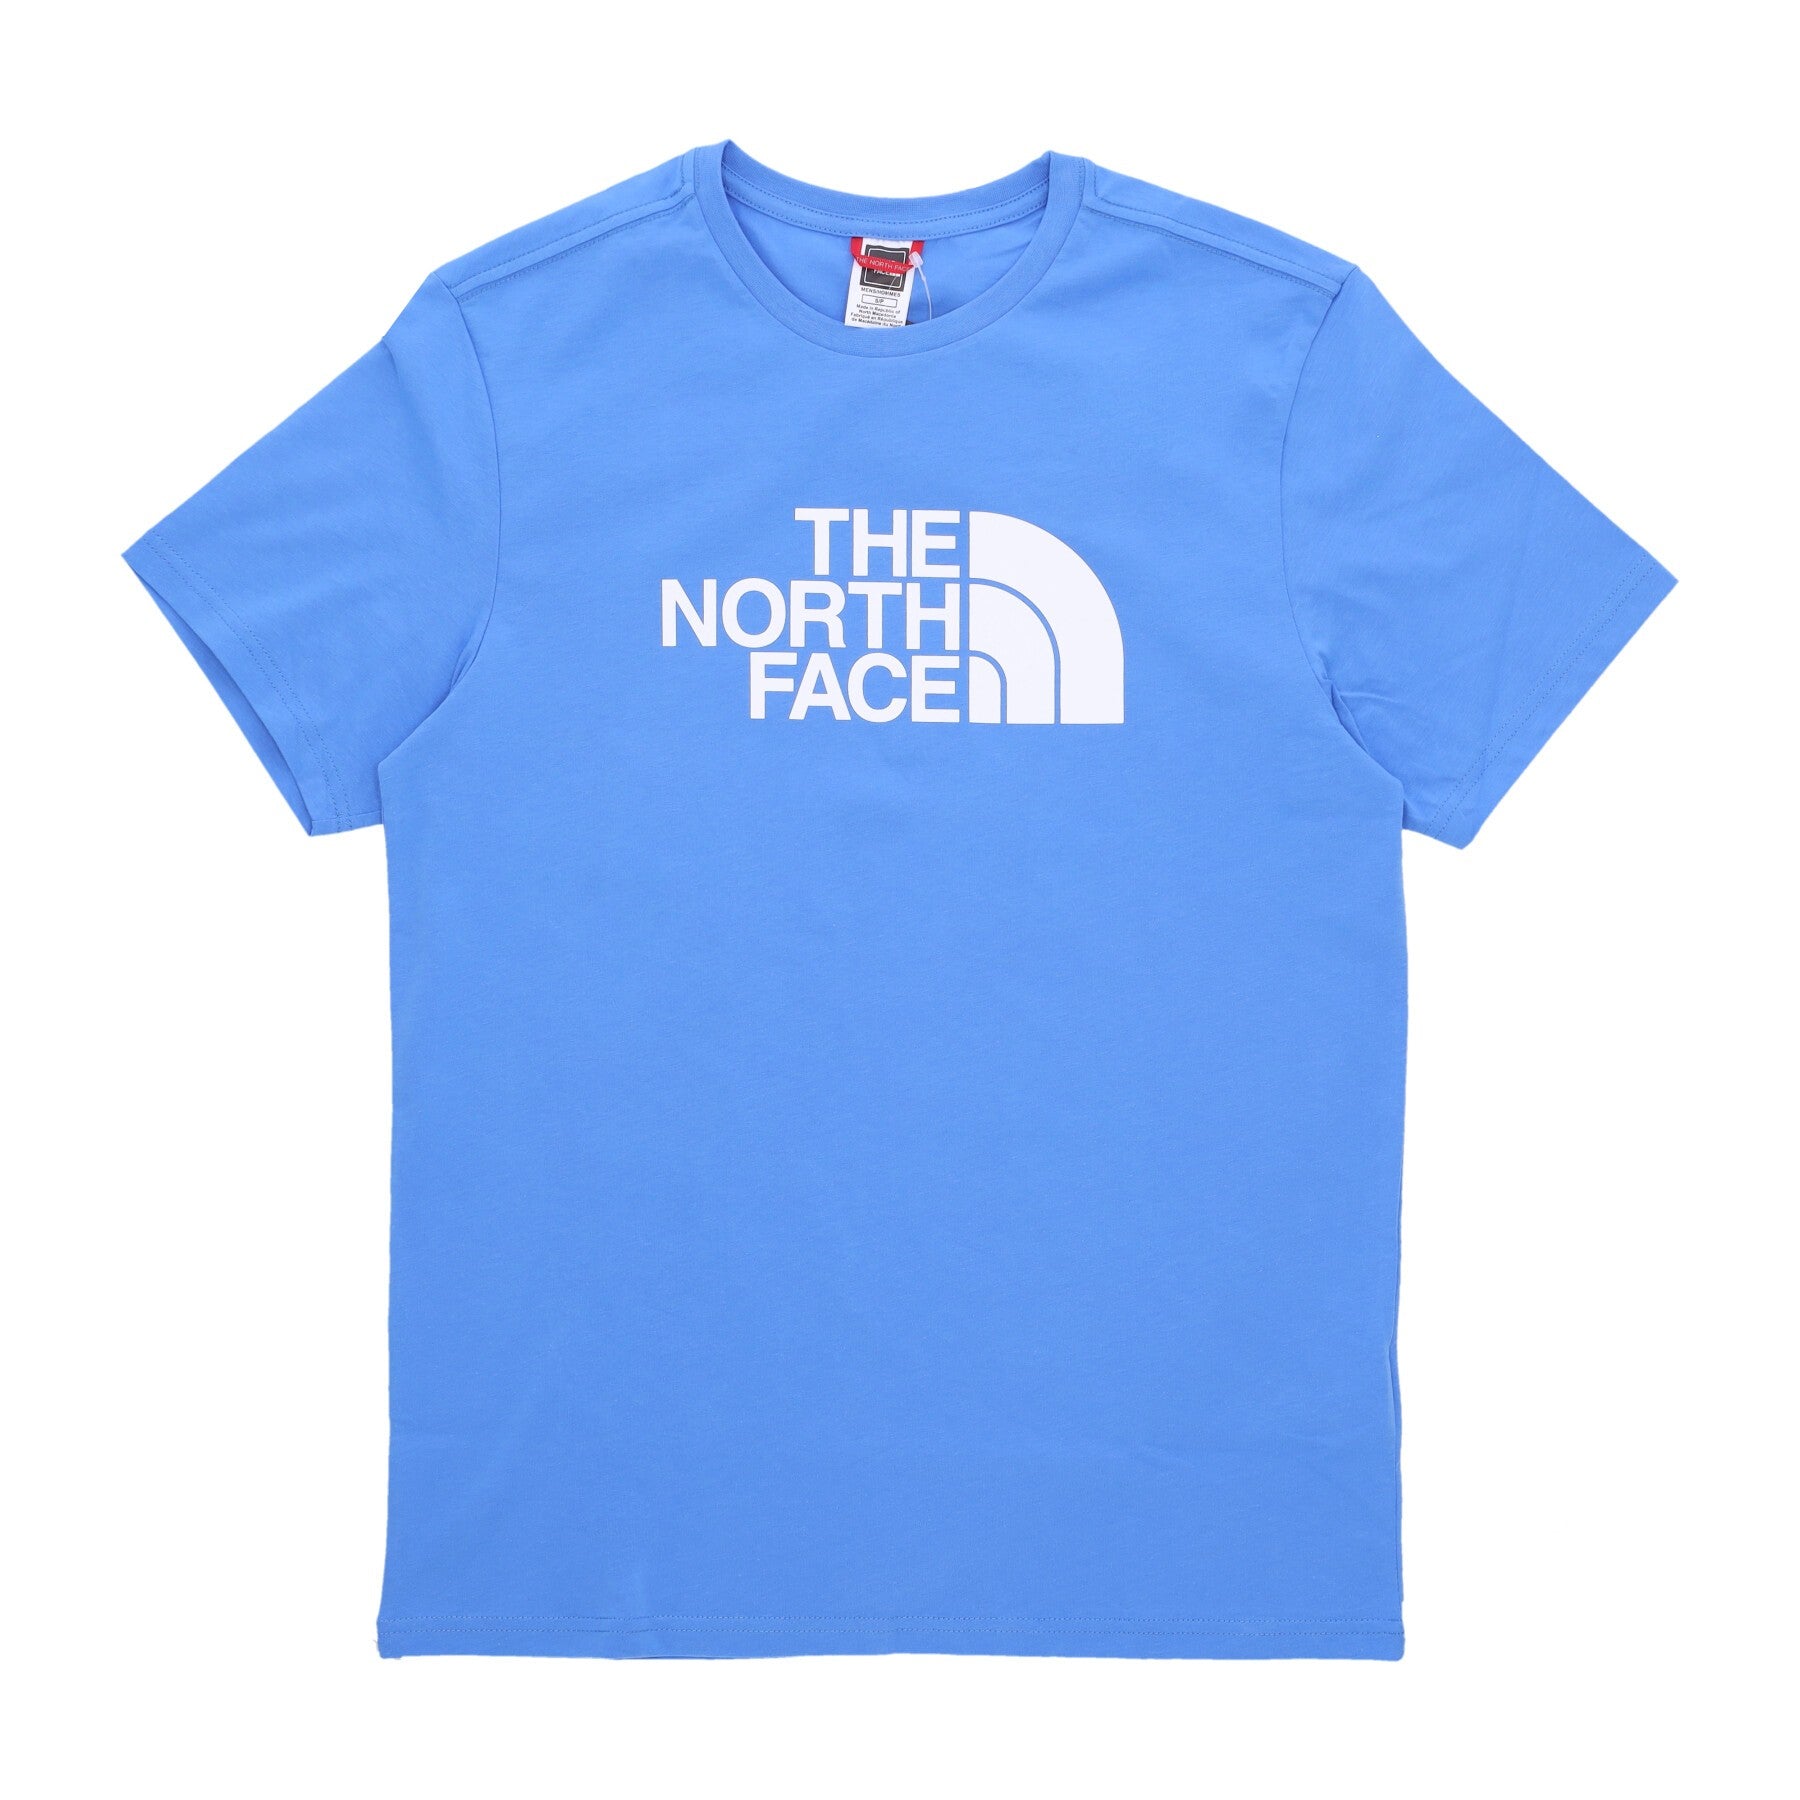 The North Face, Maglietta Uomo Easy Tee, Super Sonic Blue